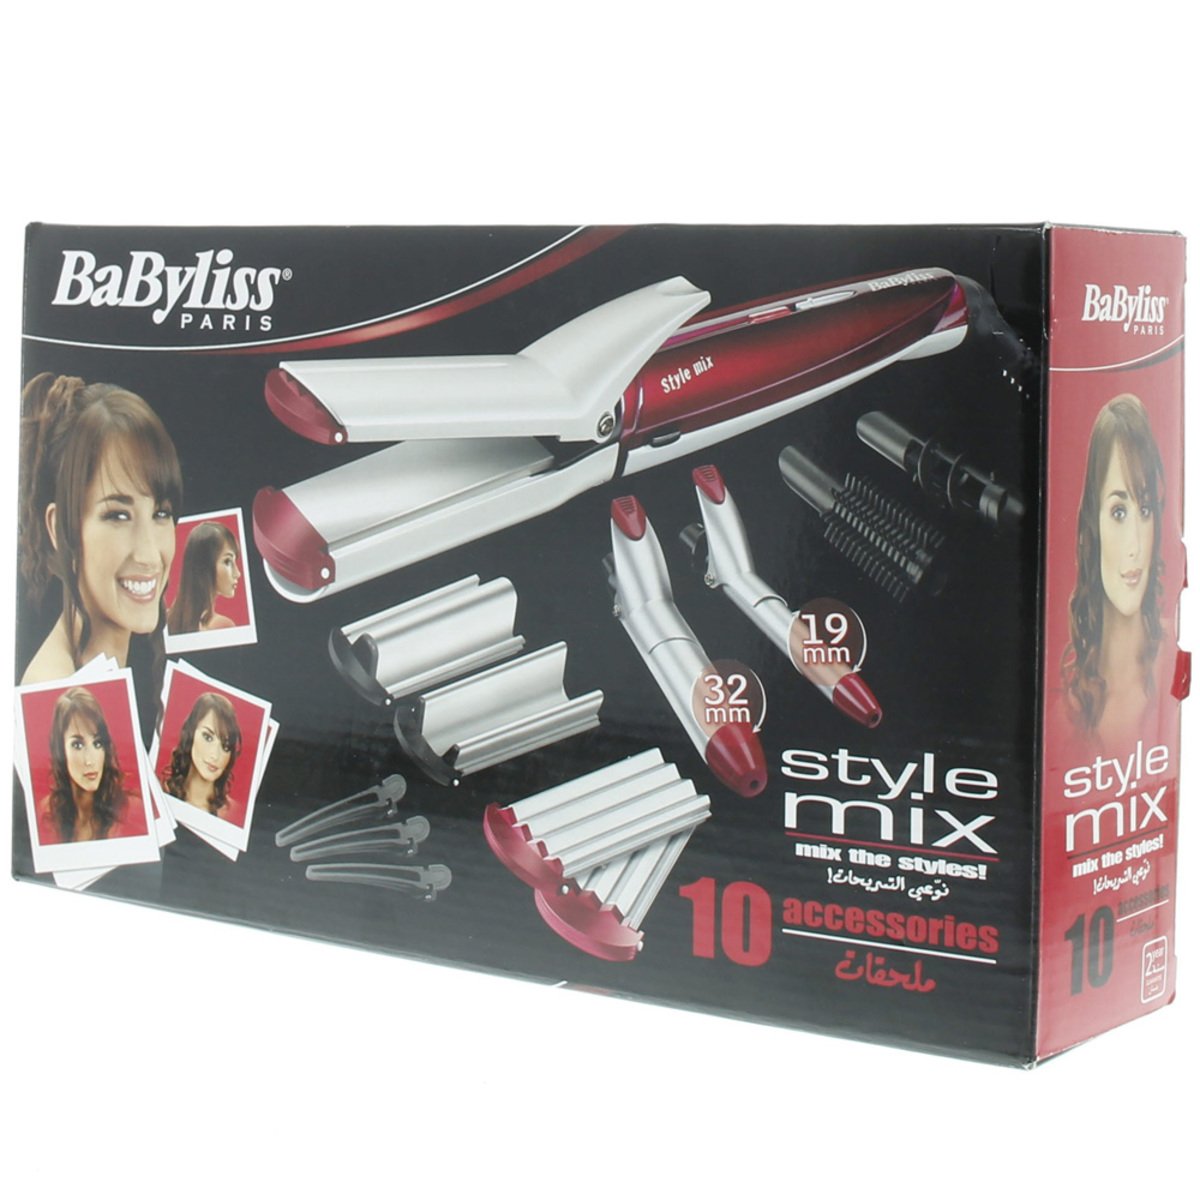 Babyliss Hair Straightener Kit MS21SD